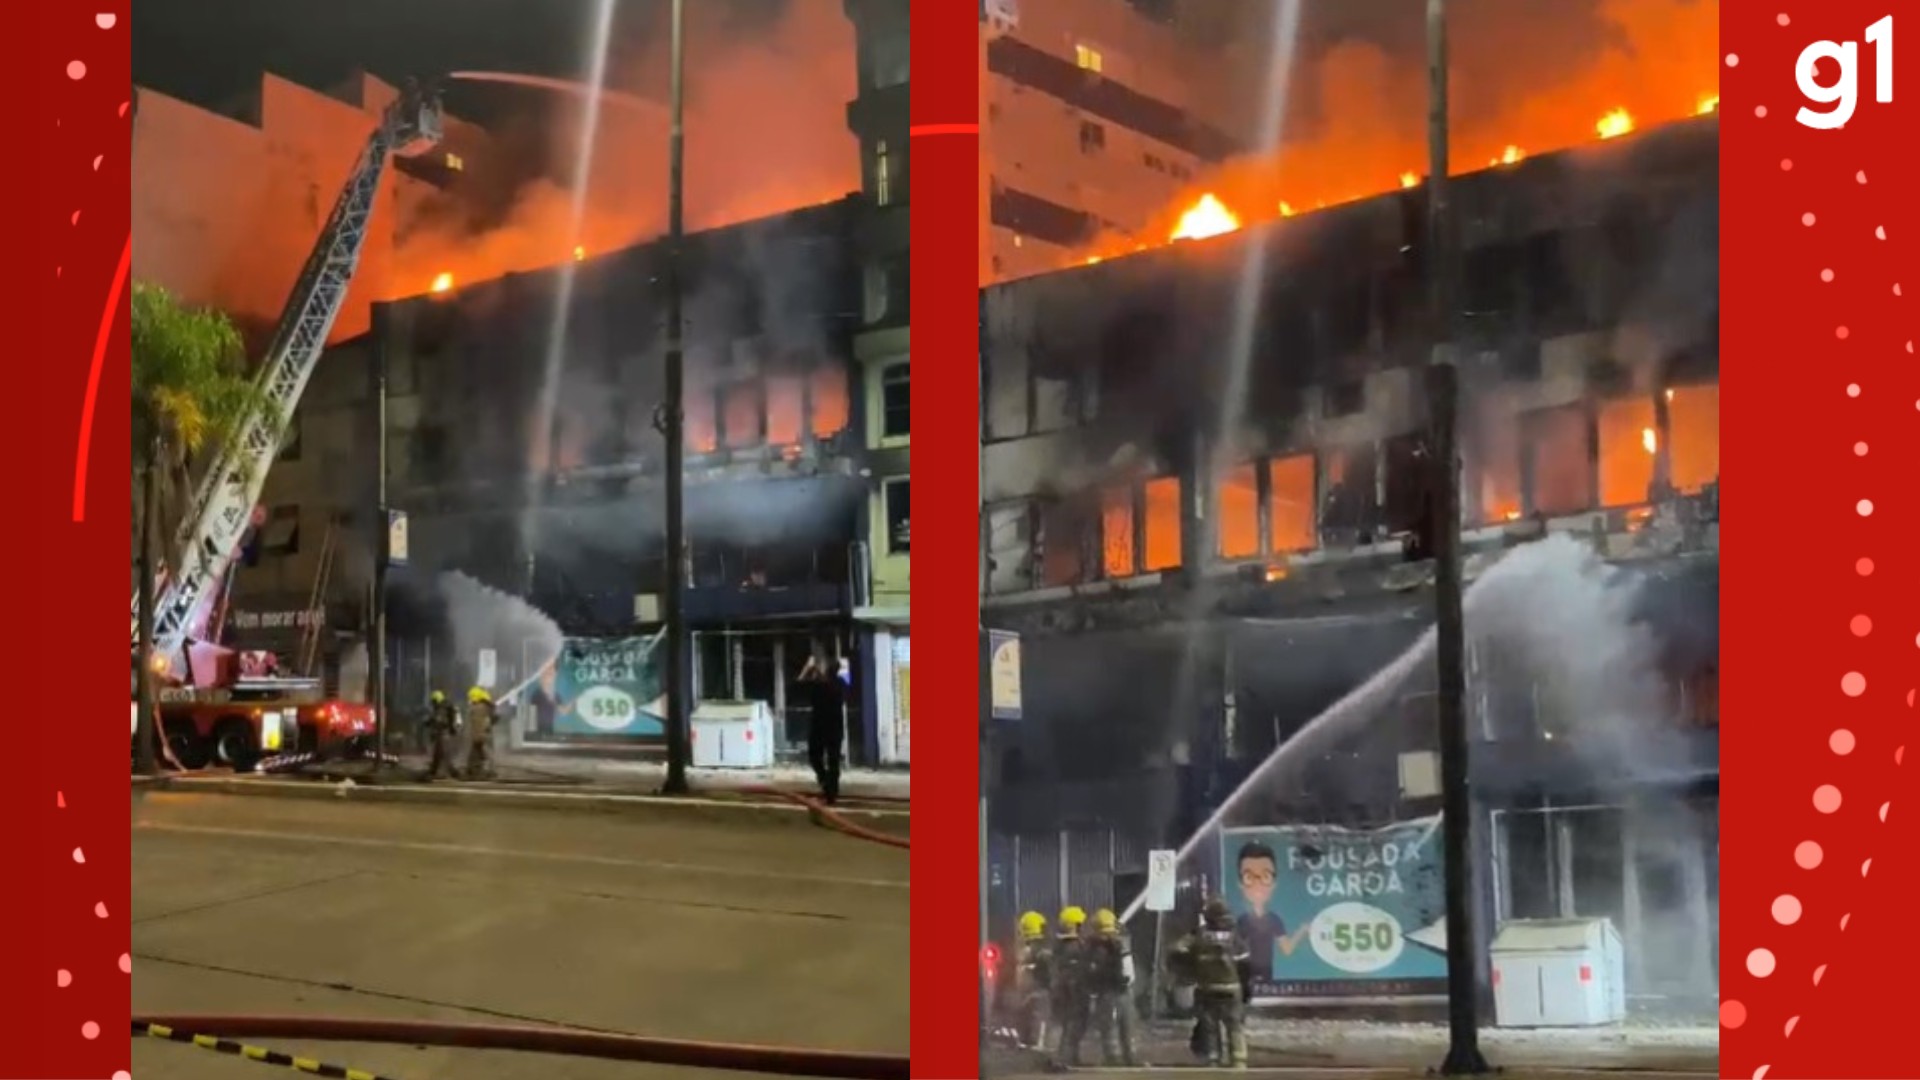 Incêndio em pousada no RS se alastrou após morador tentar apagar fogo com colchão, diz Polícia Civil